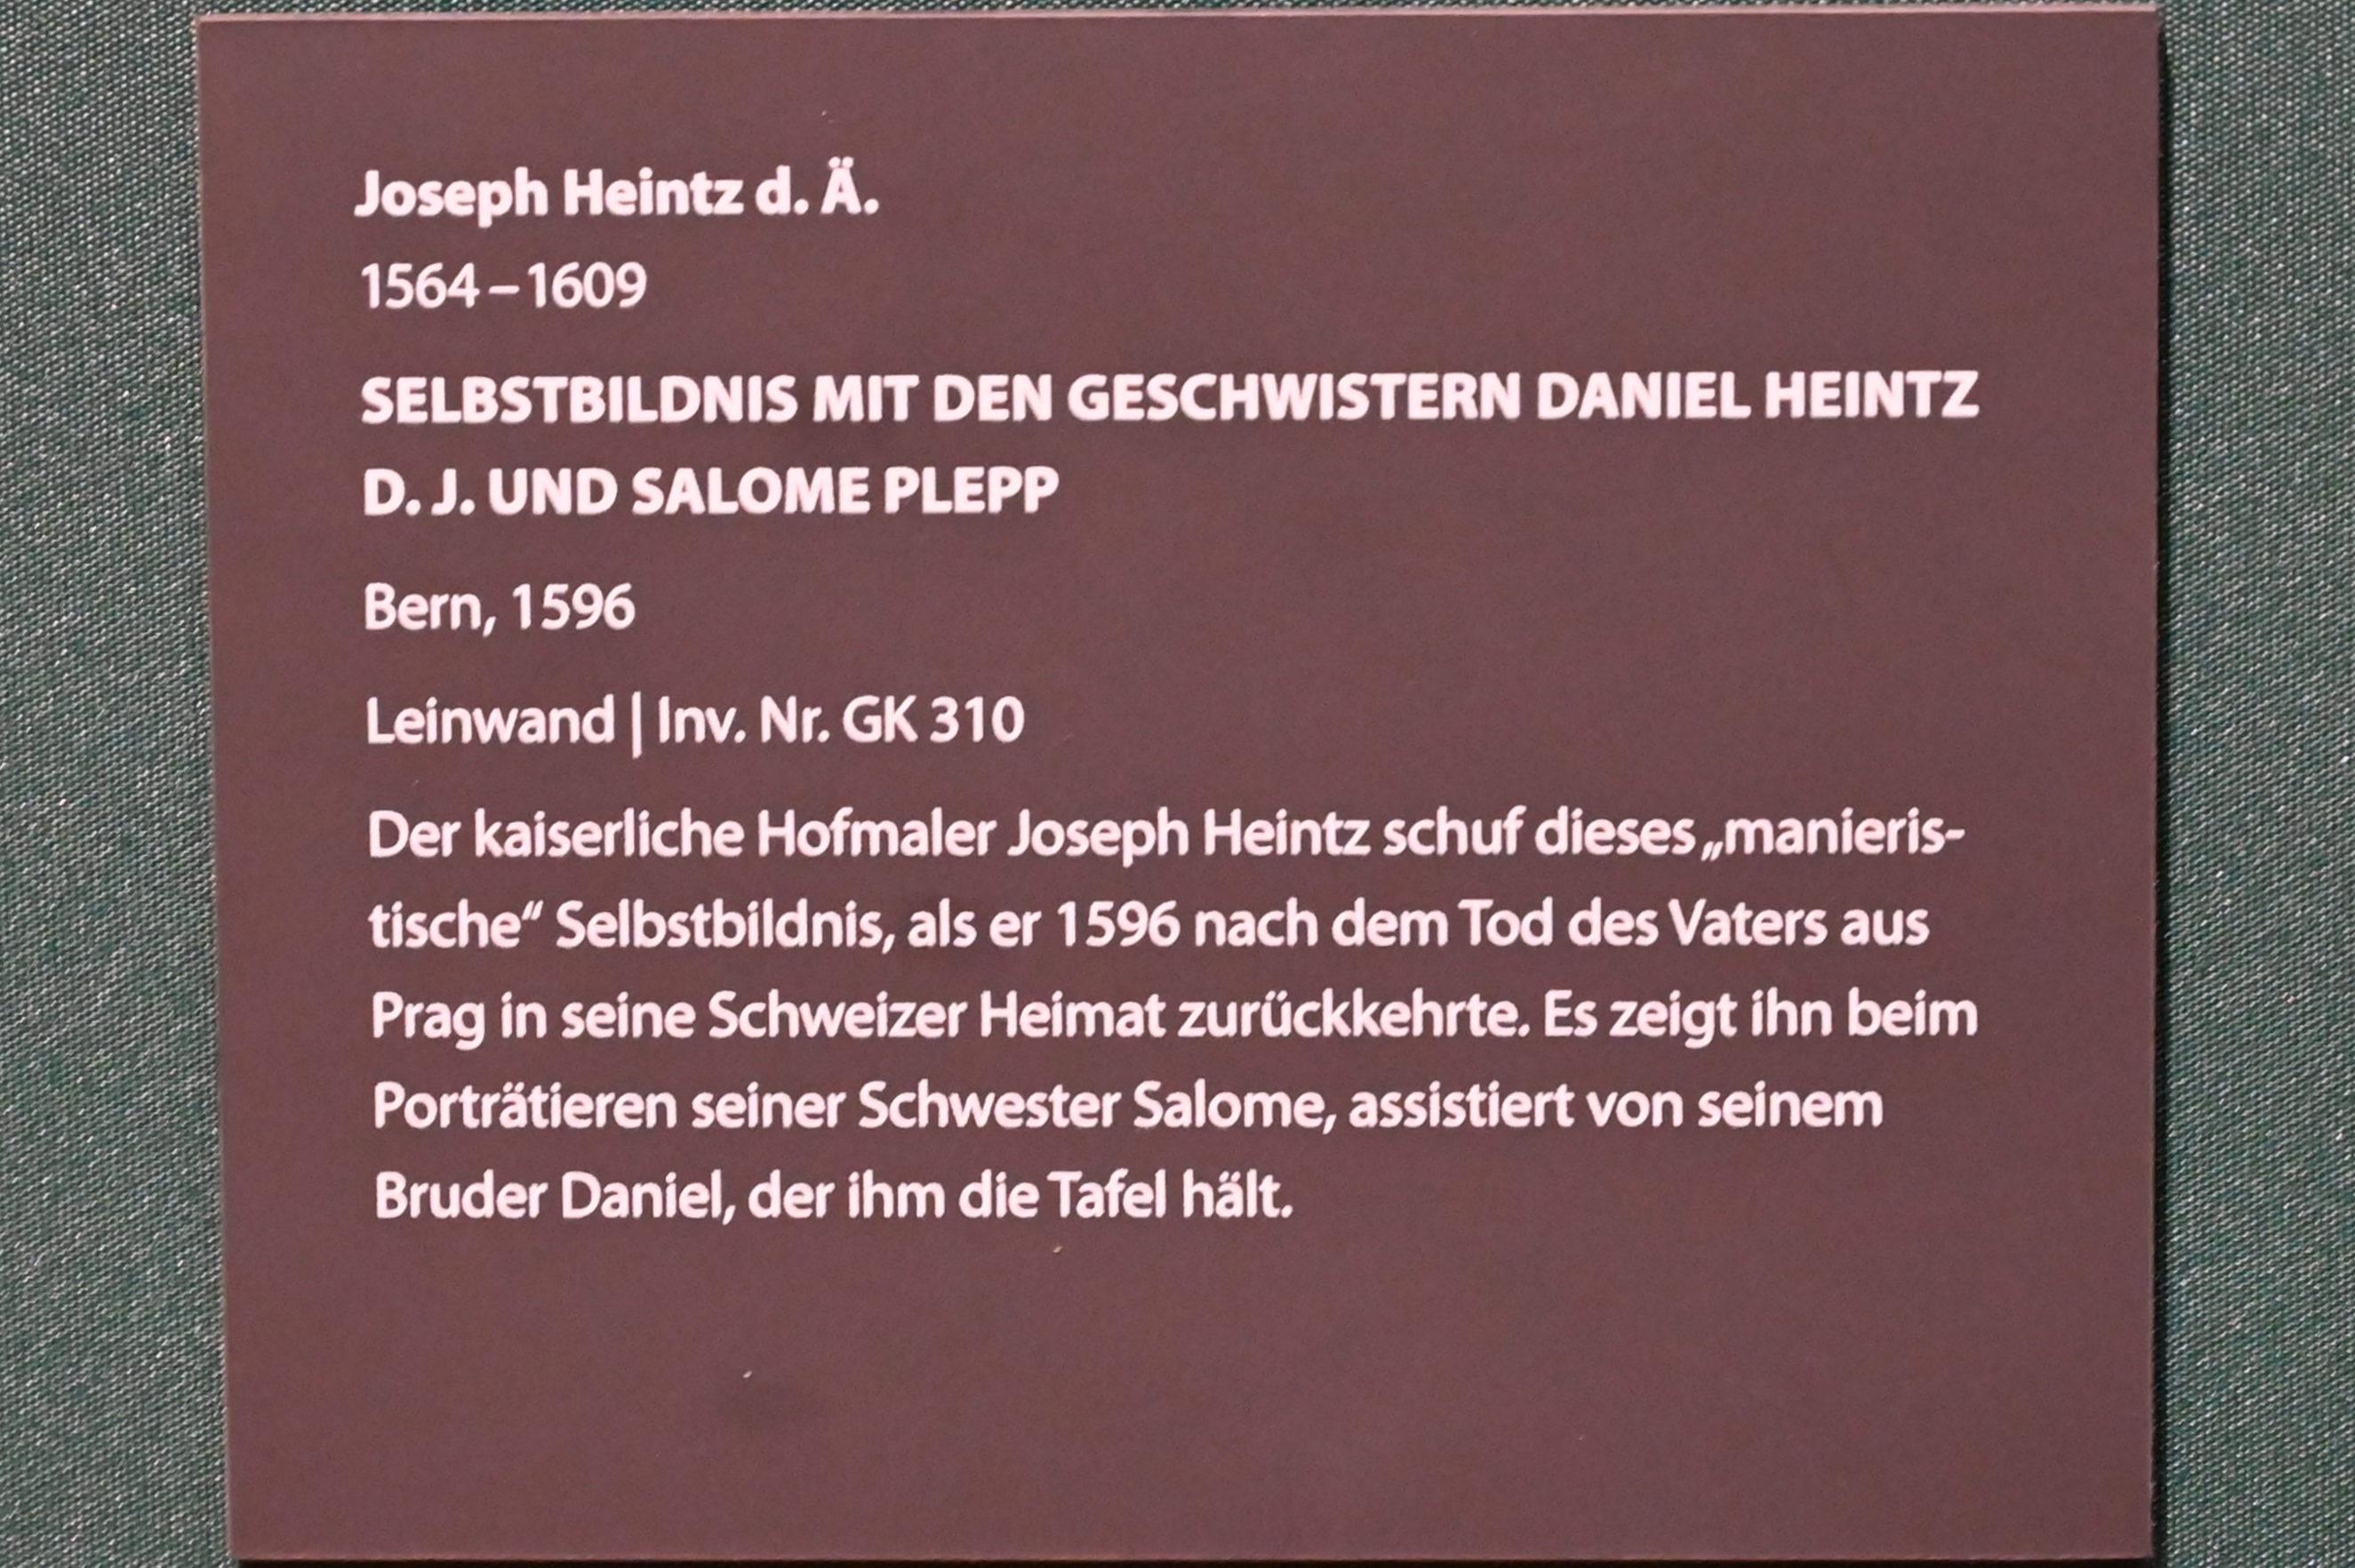 Joseph Heintz der Ältere (1590–1605), Selbstbildnis mit den Geschwistern Daniel Heintz d. J. und Salome Plepp, Darmstadt, Hessisches Landesmuseum, Saal 13, 1596, Bild 2/2